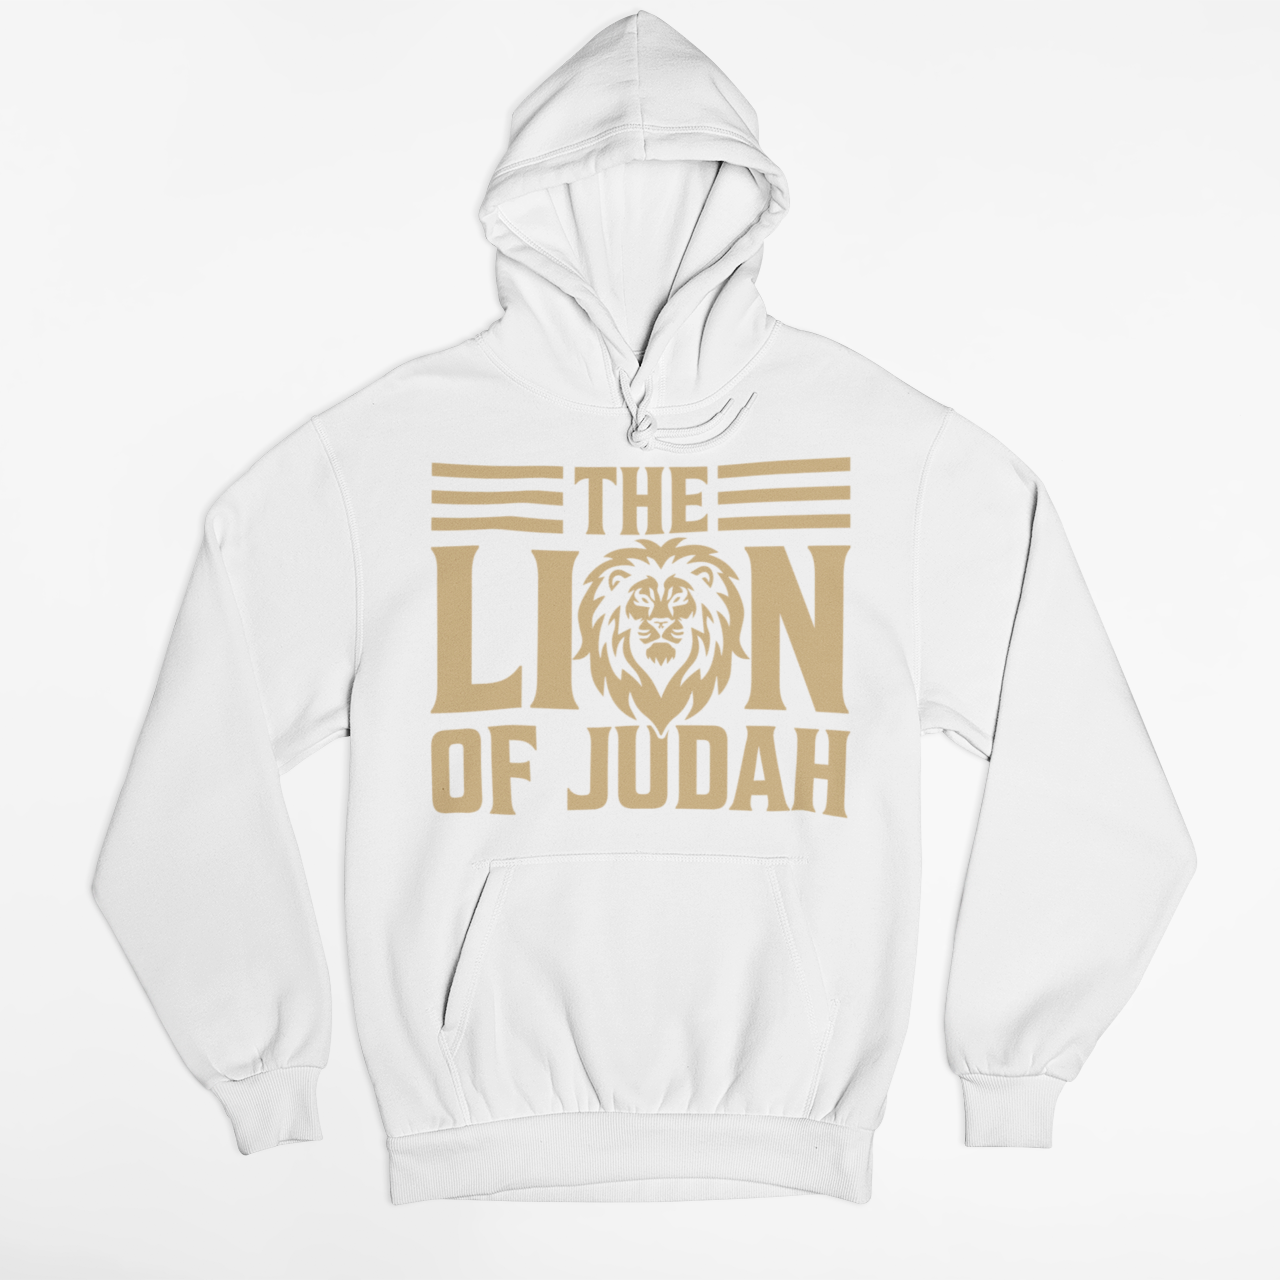 THE LION OF JUDAH HOODIE